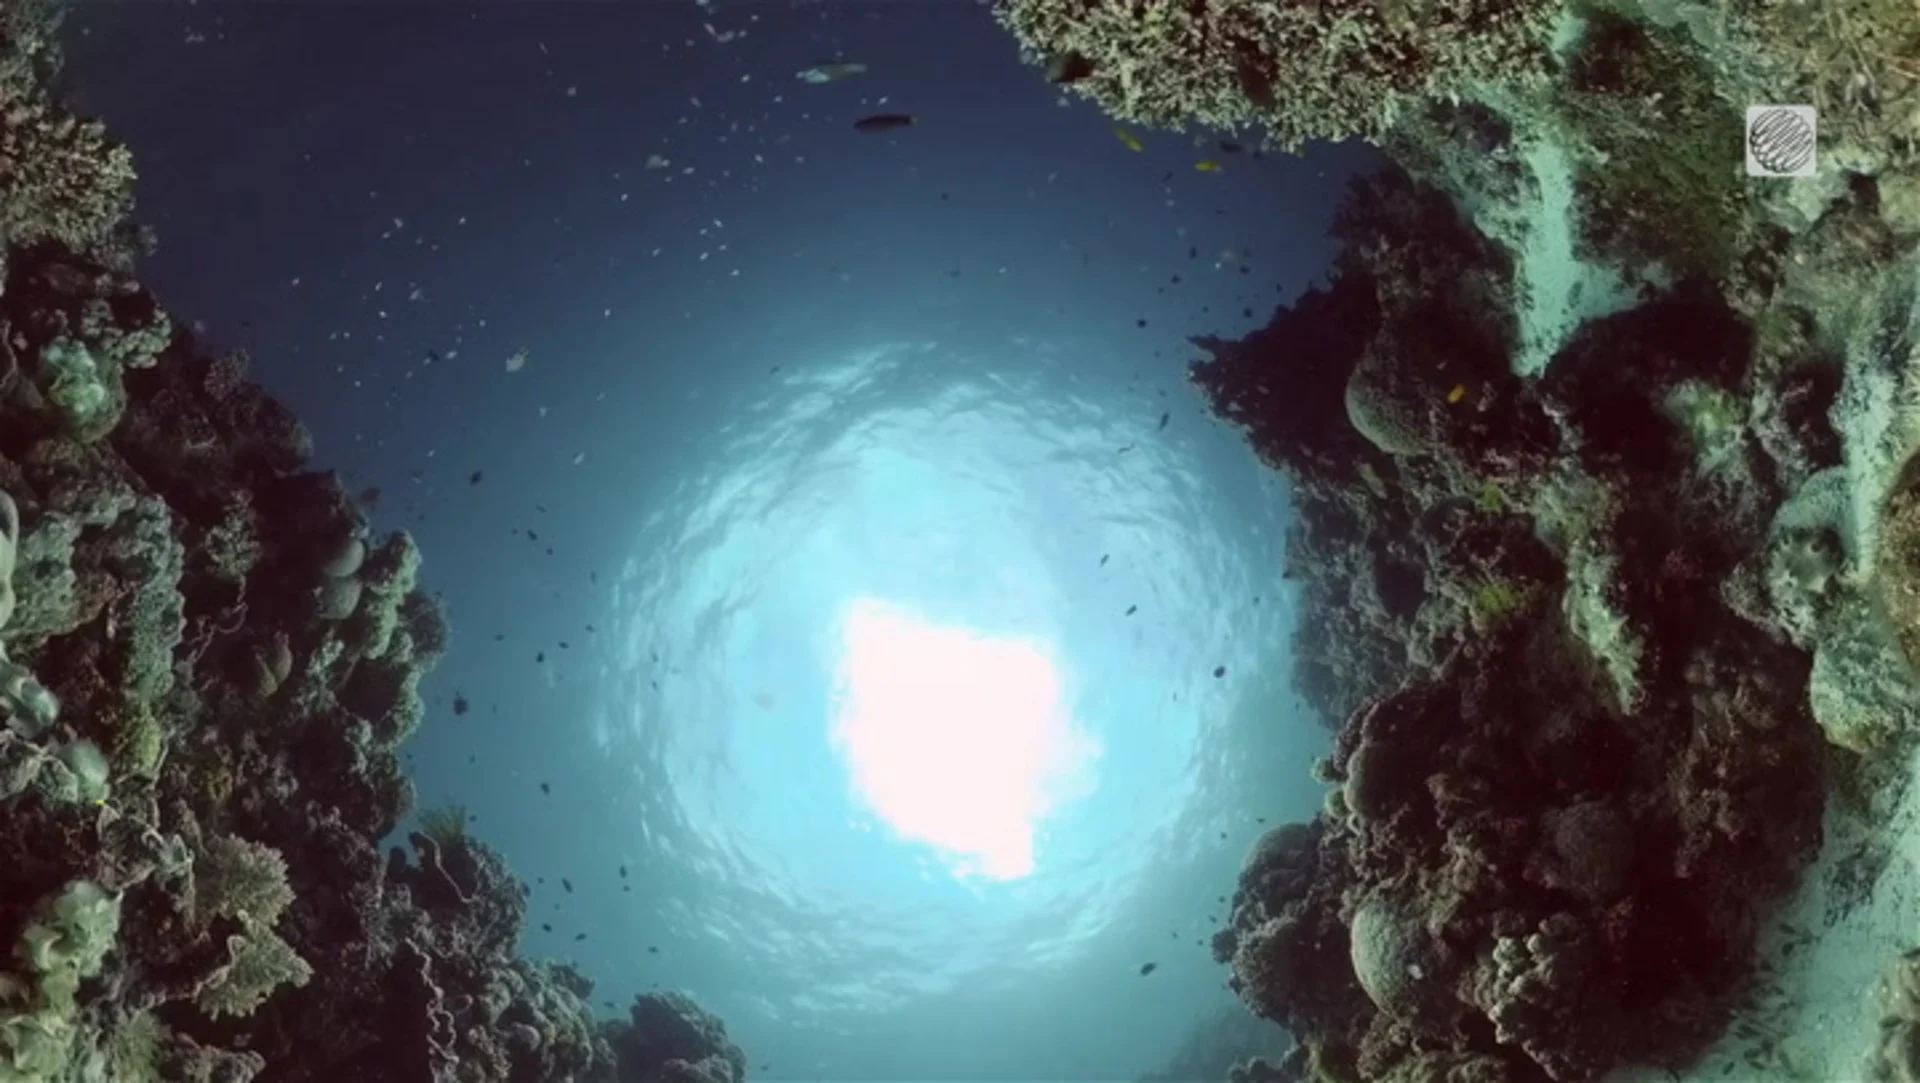 Ce trou dans l'océan serait le plus profond au monde. Voyez où c'est.